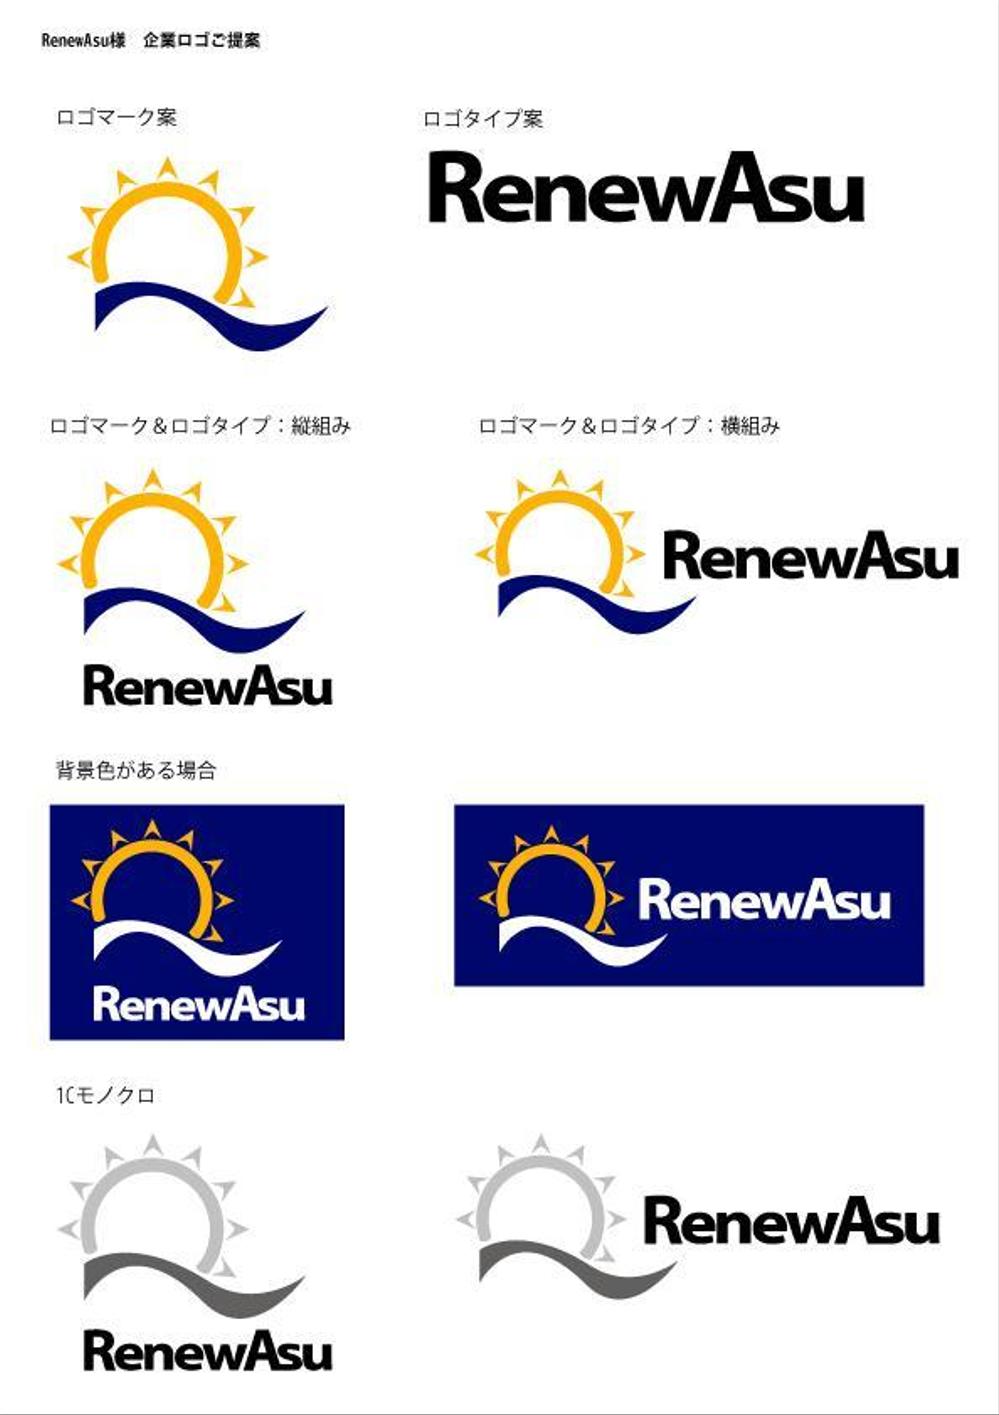 RenewAsu.jpg